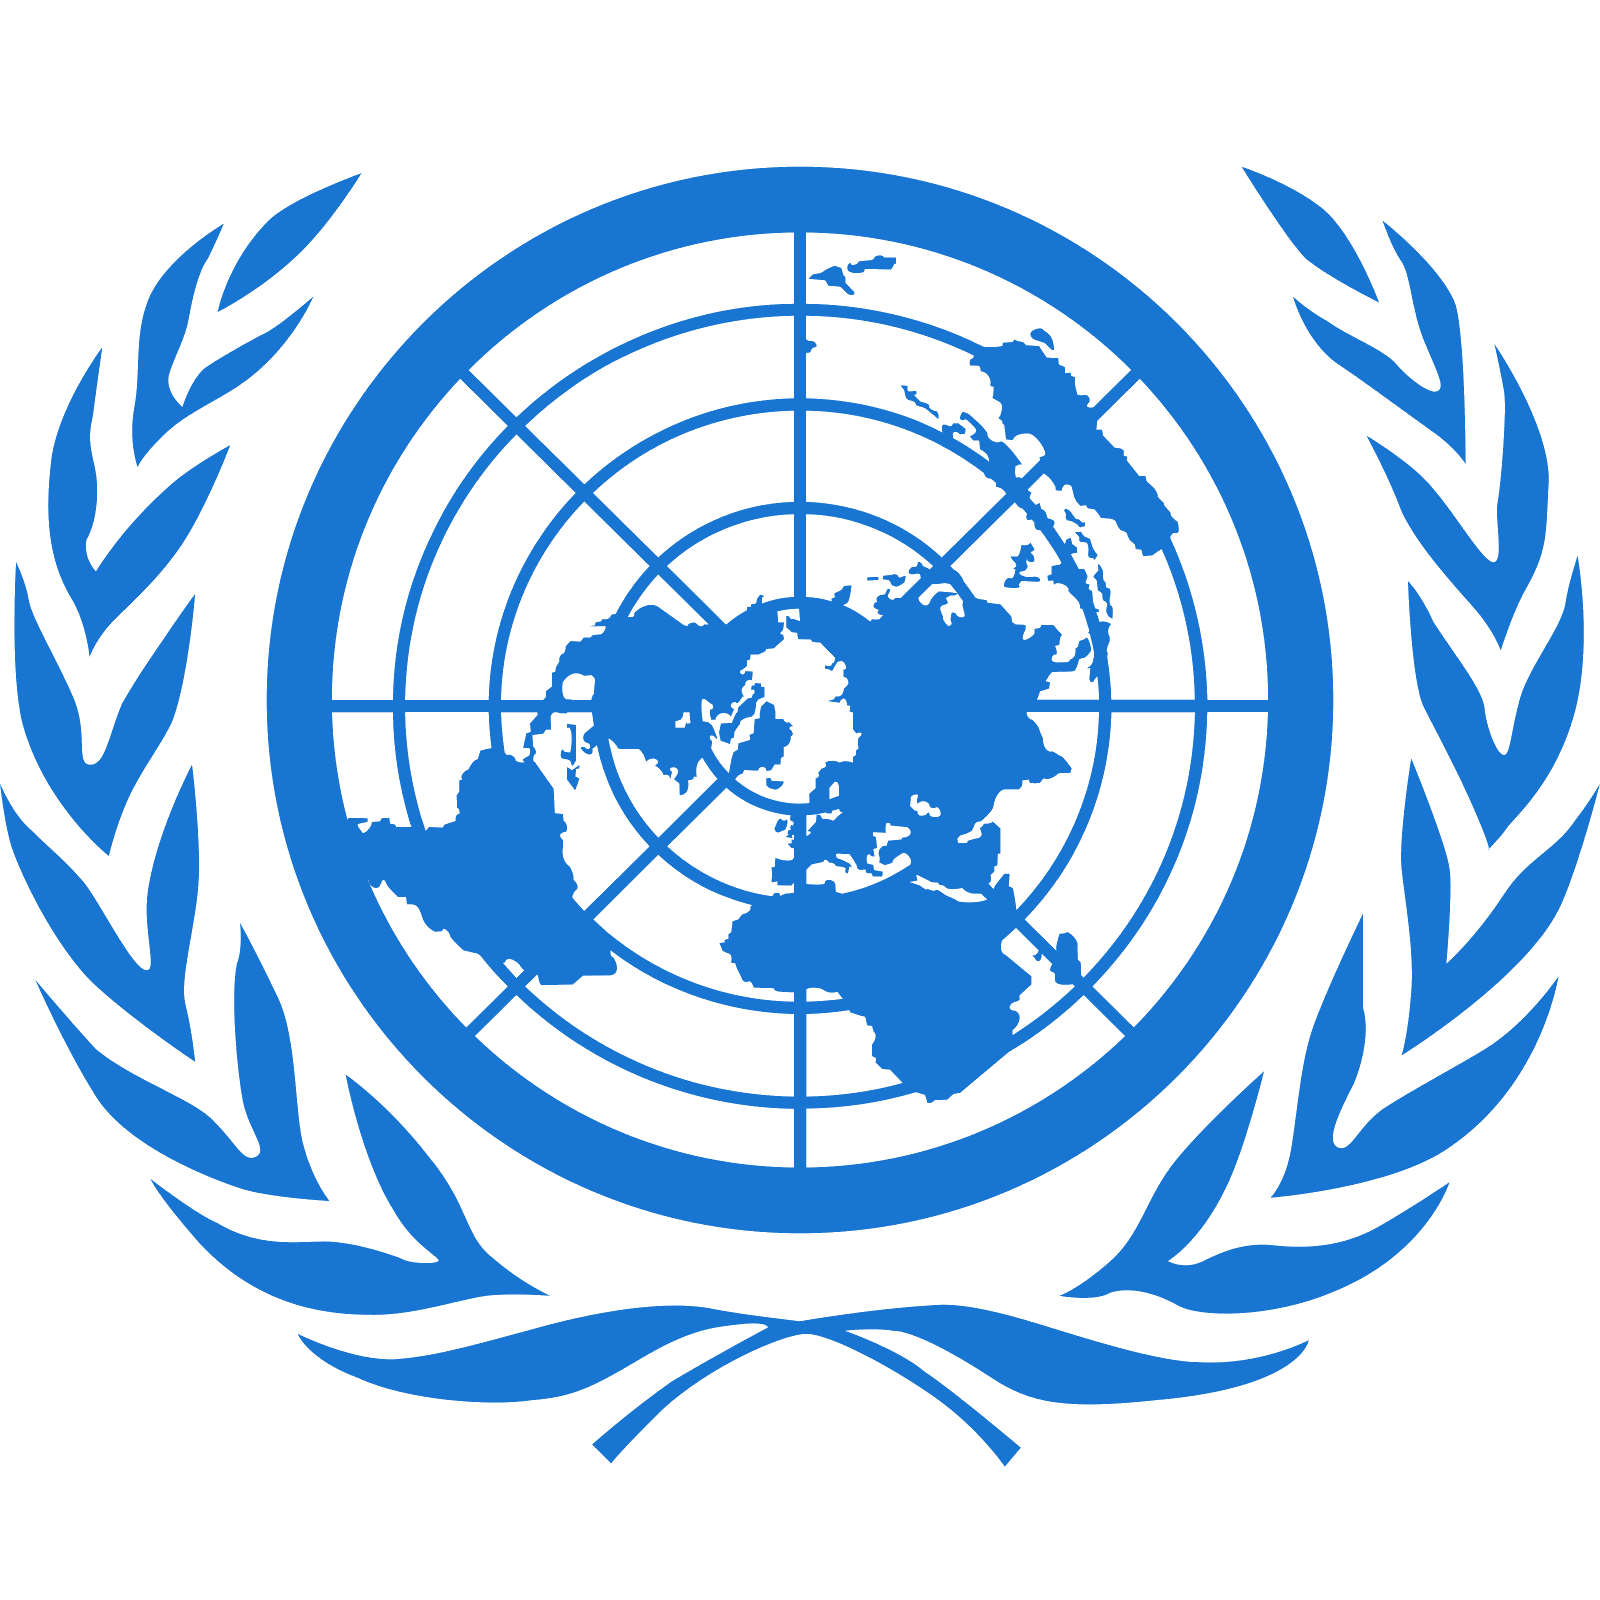 united-nations-logo-vector-wwwpixsharkcom-images-182620.png